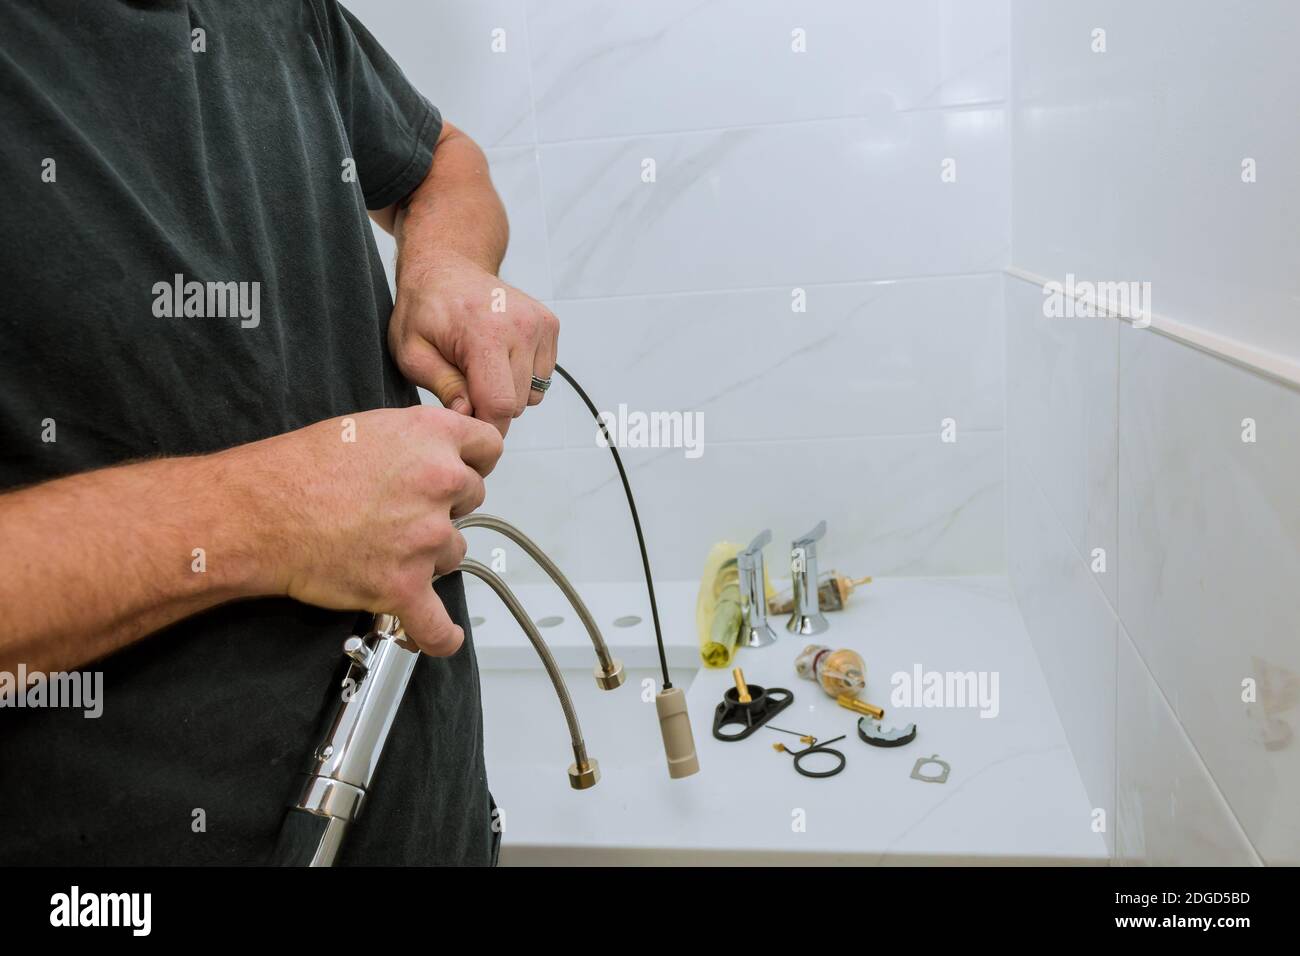 Plombier installer un robinet dans une salle de bains, seulement les mains pour assembler le service Banque D'Images